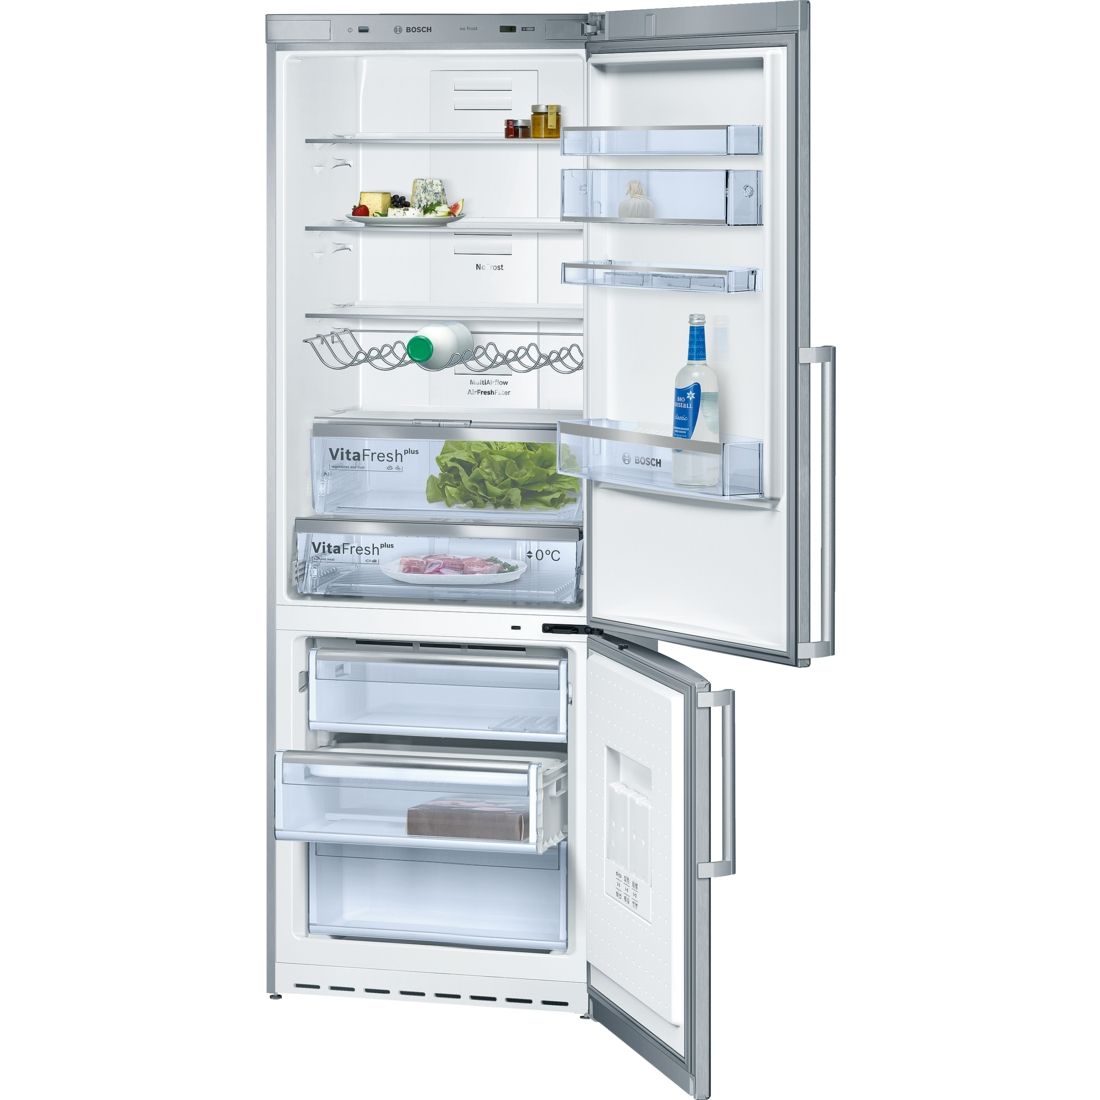 Tủ lạnh đơn BOSCH KGN49AI22|Serie 6